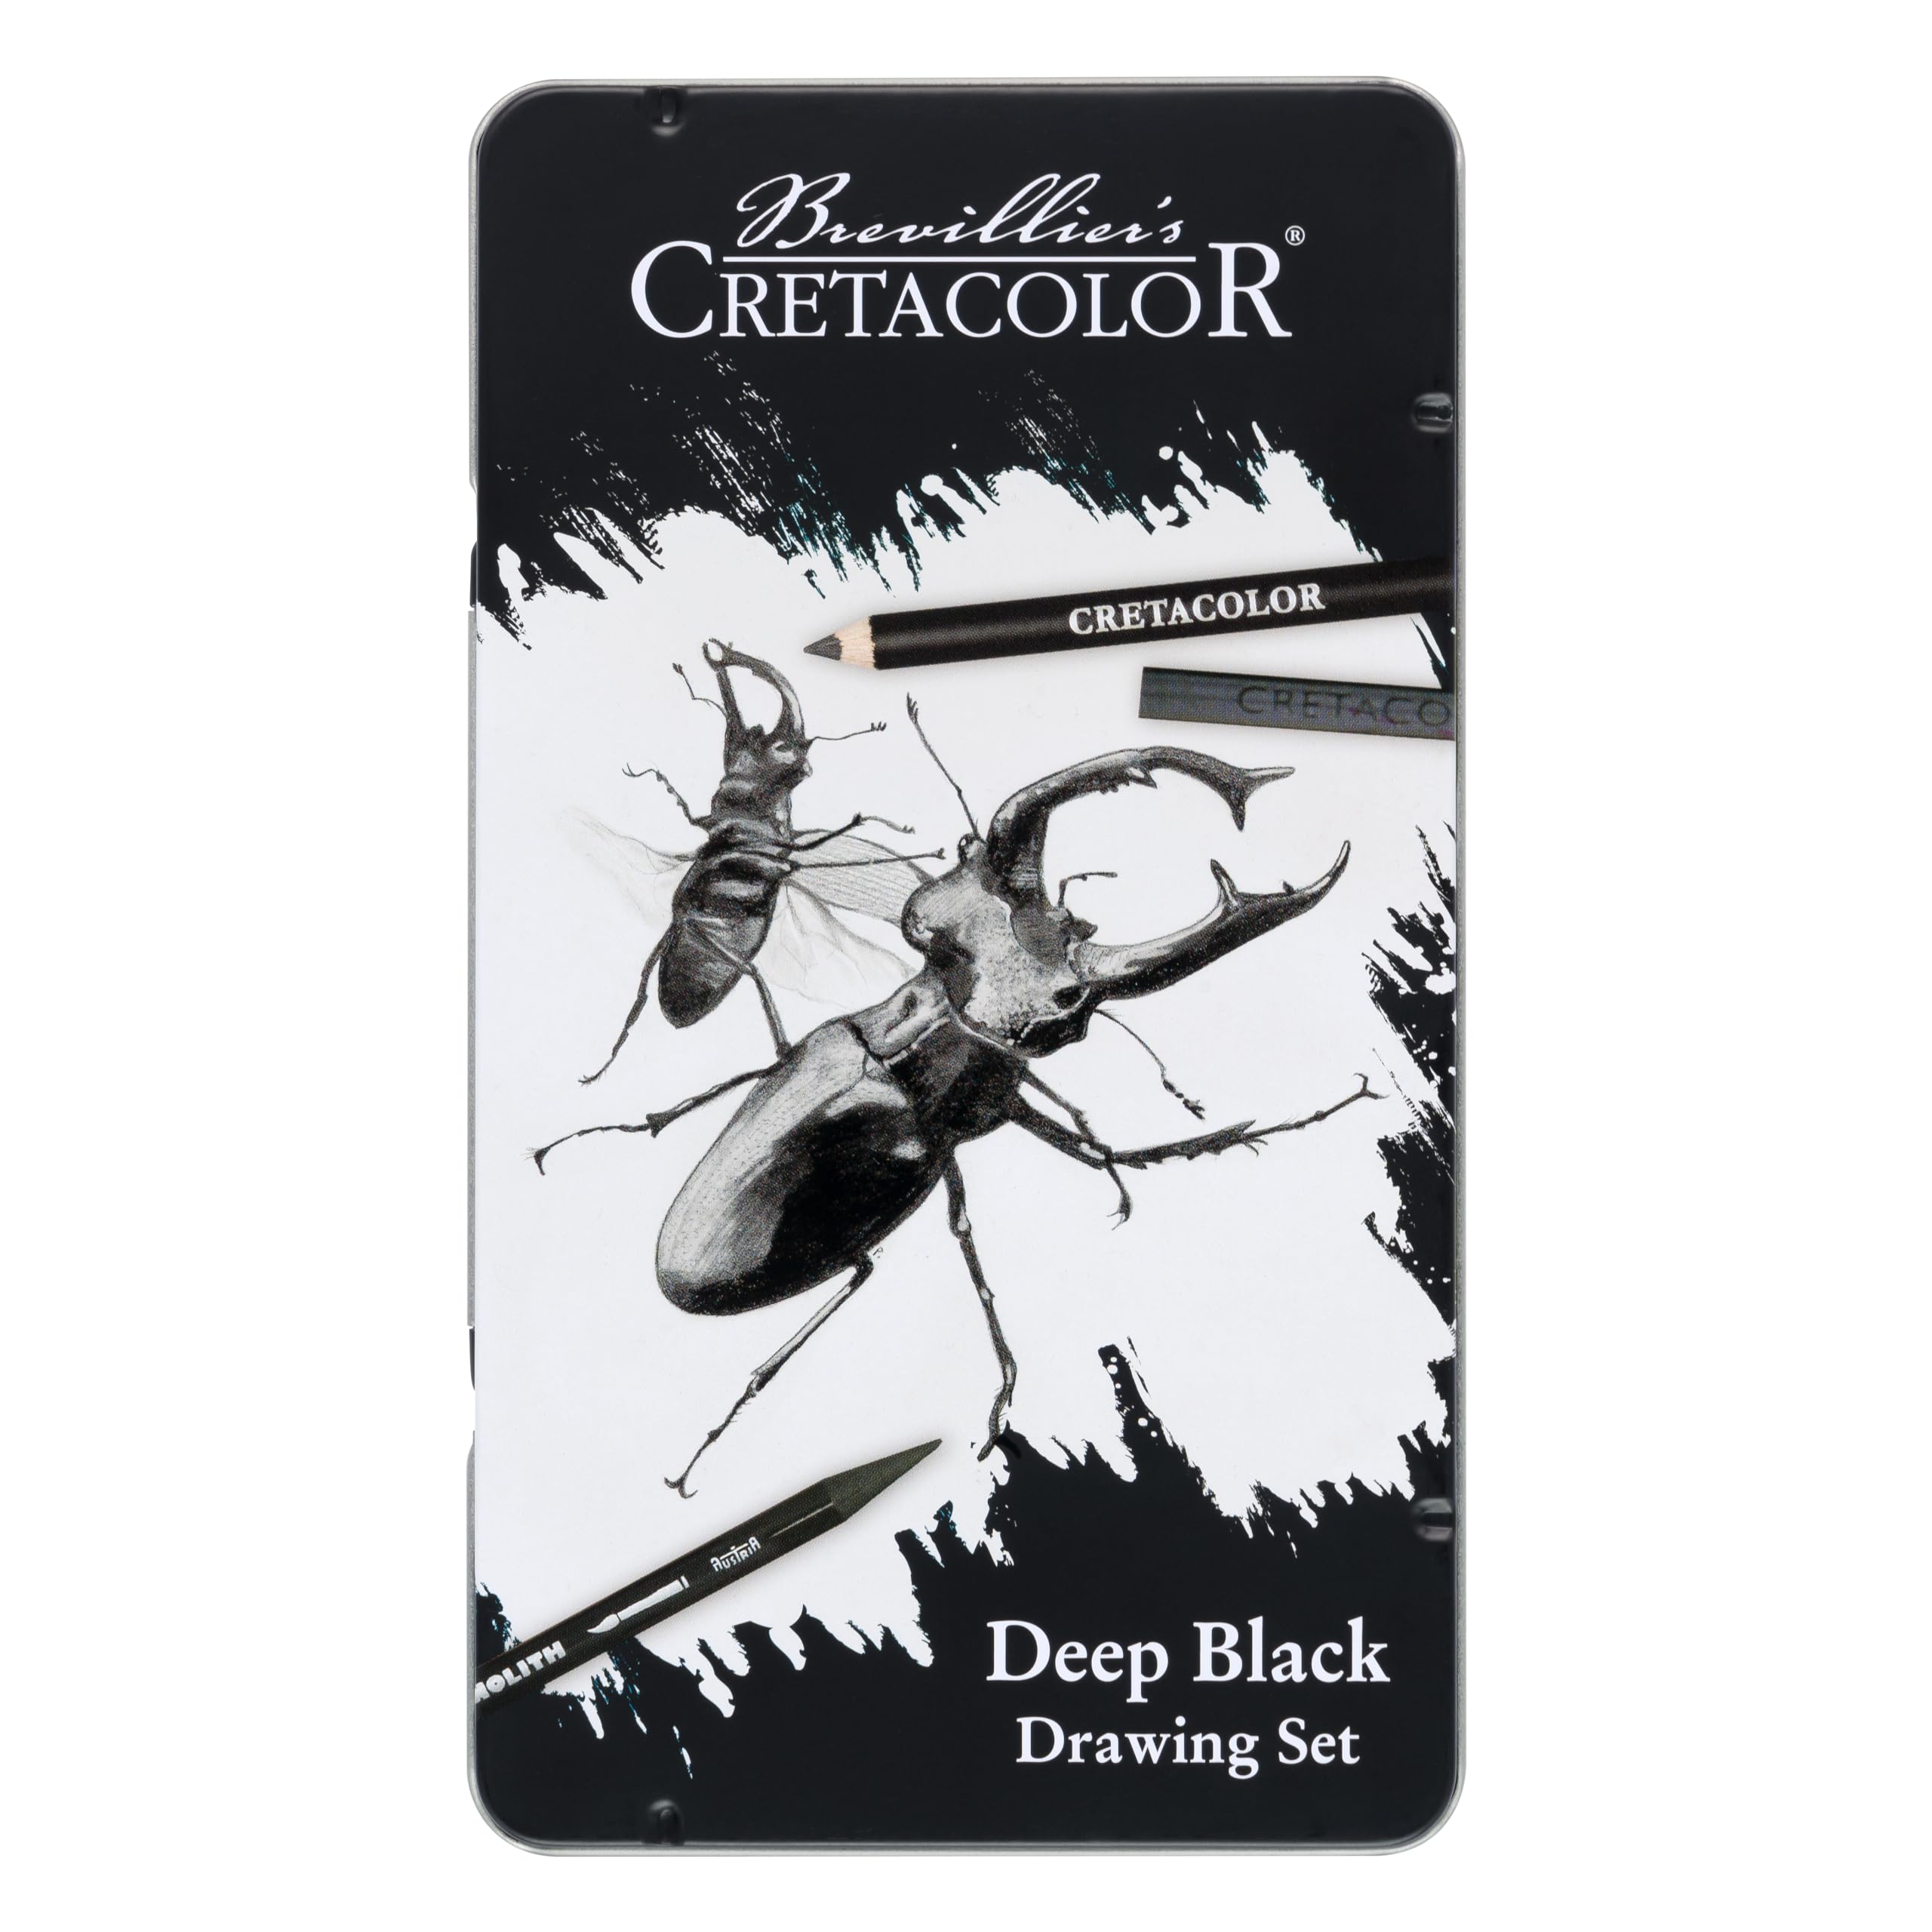 CRETACOLOR Deep Black, Drawing Set, Tiefschwarzes Zeichen- und Skizzierset, 10-teilig, Nicht giftig, hochpigmentiert, inkl. Radiergummi und Papierwischer, geeignet für Künstler und Anfänger